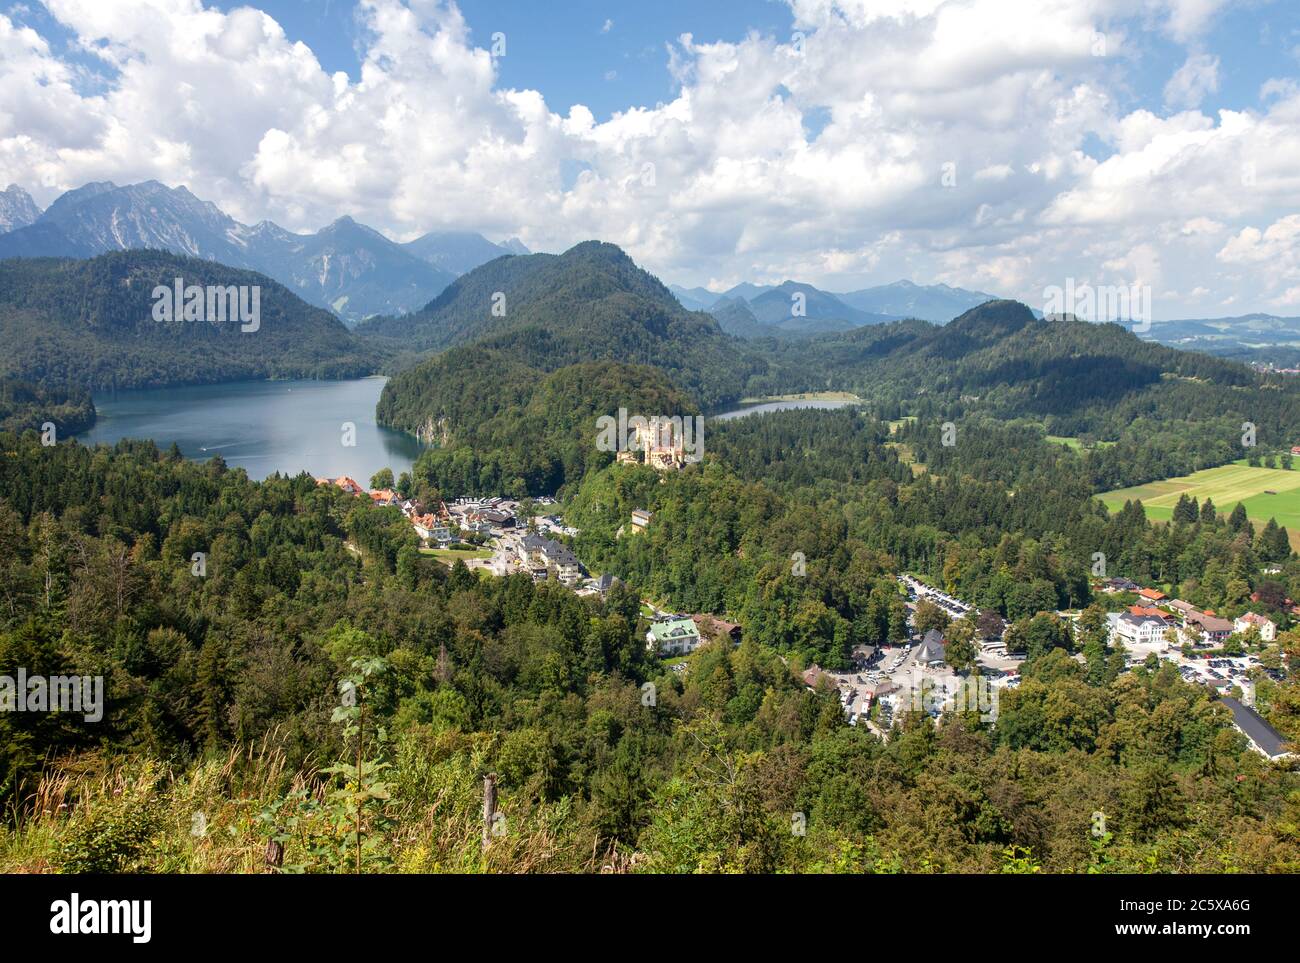 Blick auf die Touristenstadt Hohenschwangau und den Alpensee vom Schlossgelände Neuschwanstein aus gesehen, Bayern, Deutschland. Stockfoto